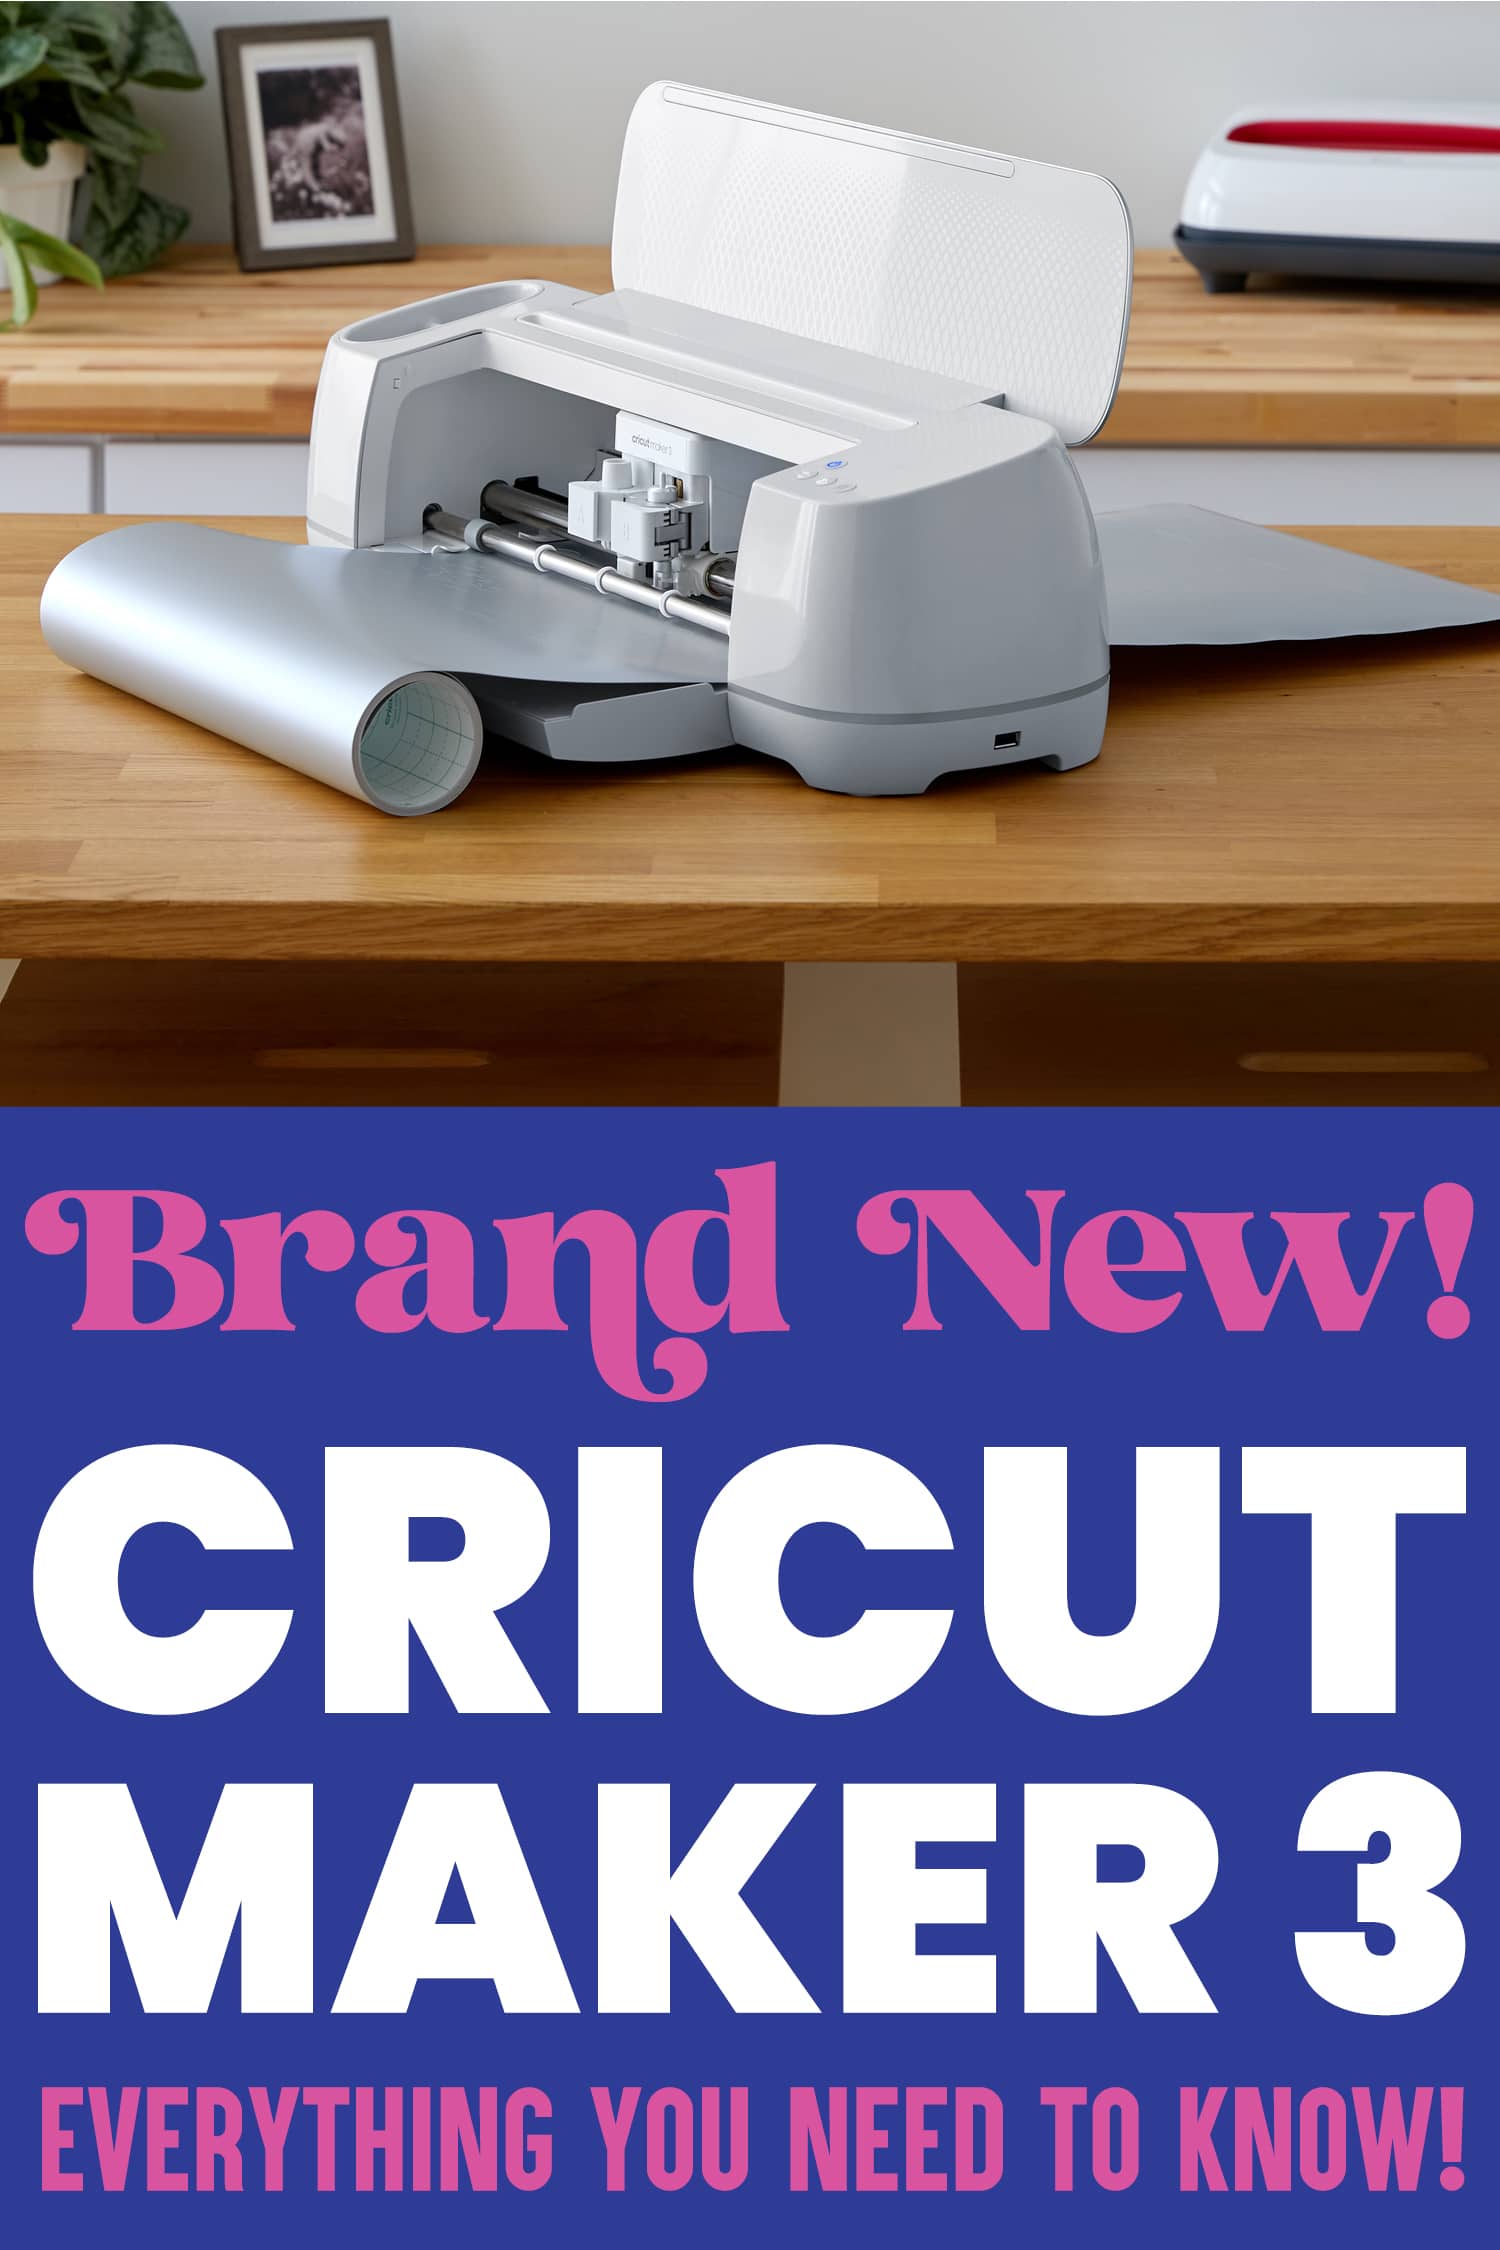 New Cricut Machine? Start here! 